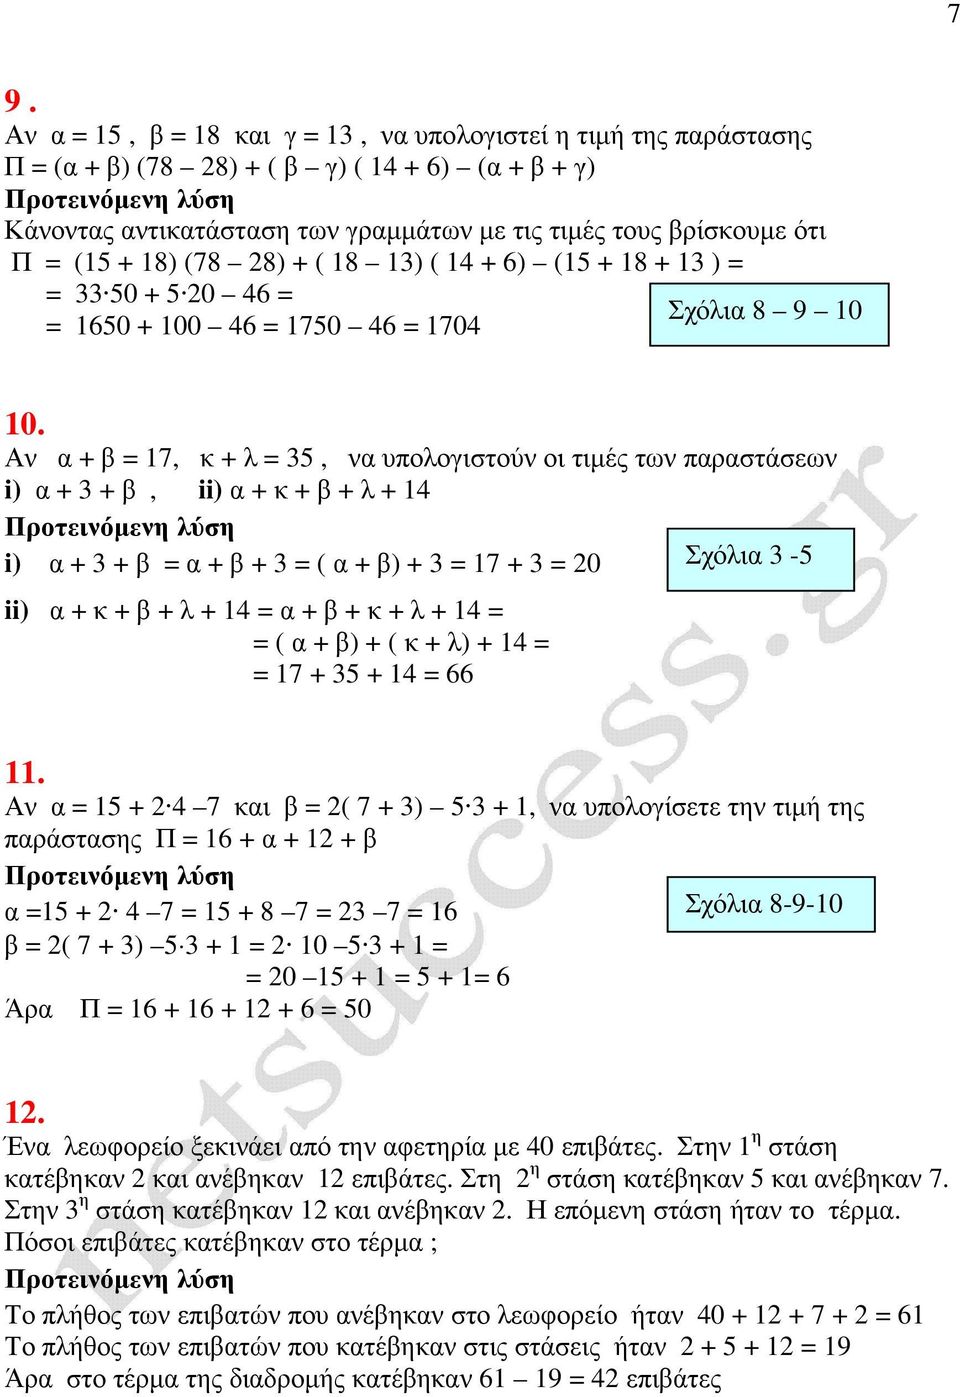 Αν α + β = 17, κ + λ = 35, να υπολογιστούν οι τιµές των παραστάσεων i) α + 3 + β, ii) α + κ + β + λ + 14 i) α + 3 + β = α + β + 3 = ( α + β) + 3 = 17 + 3 = 20 Σχόλια 3-5 ii) α + κ + β + λ + 14 = α +